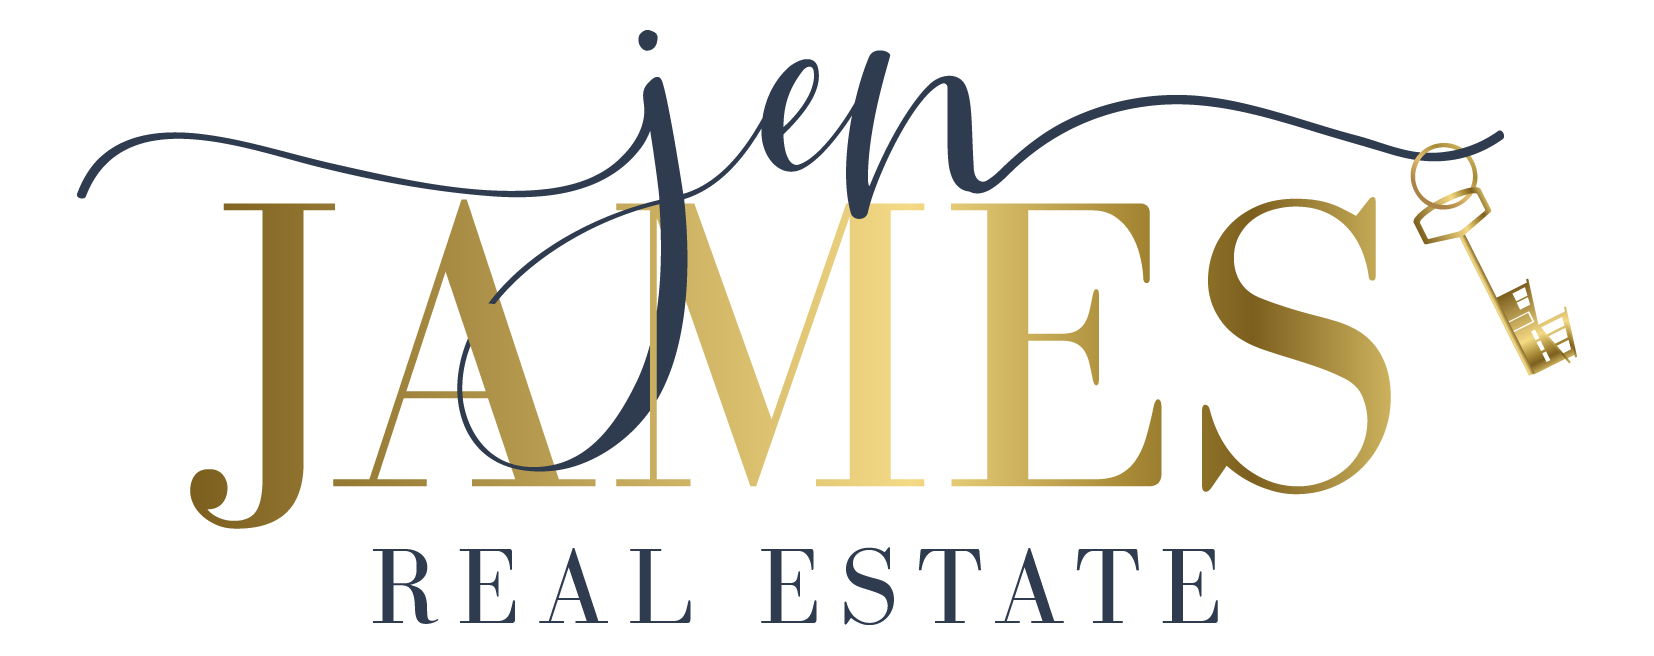 Jen James Real Estate